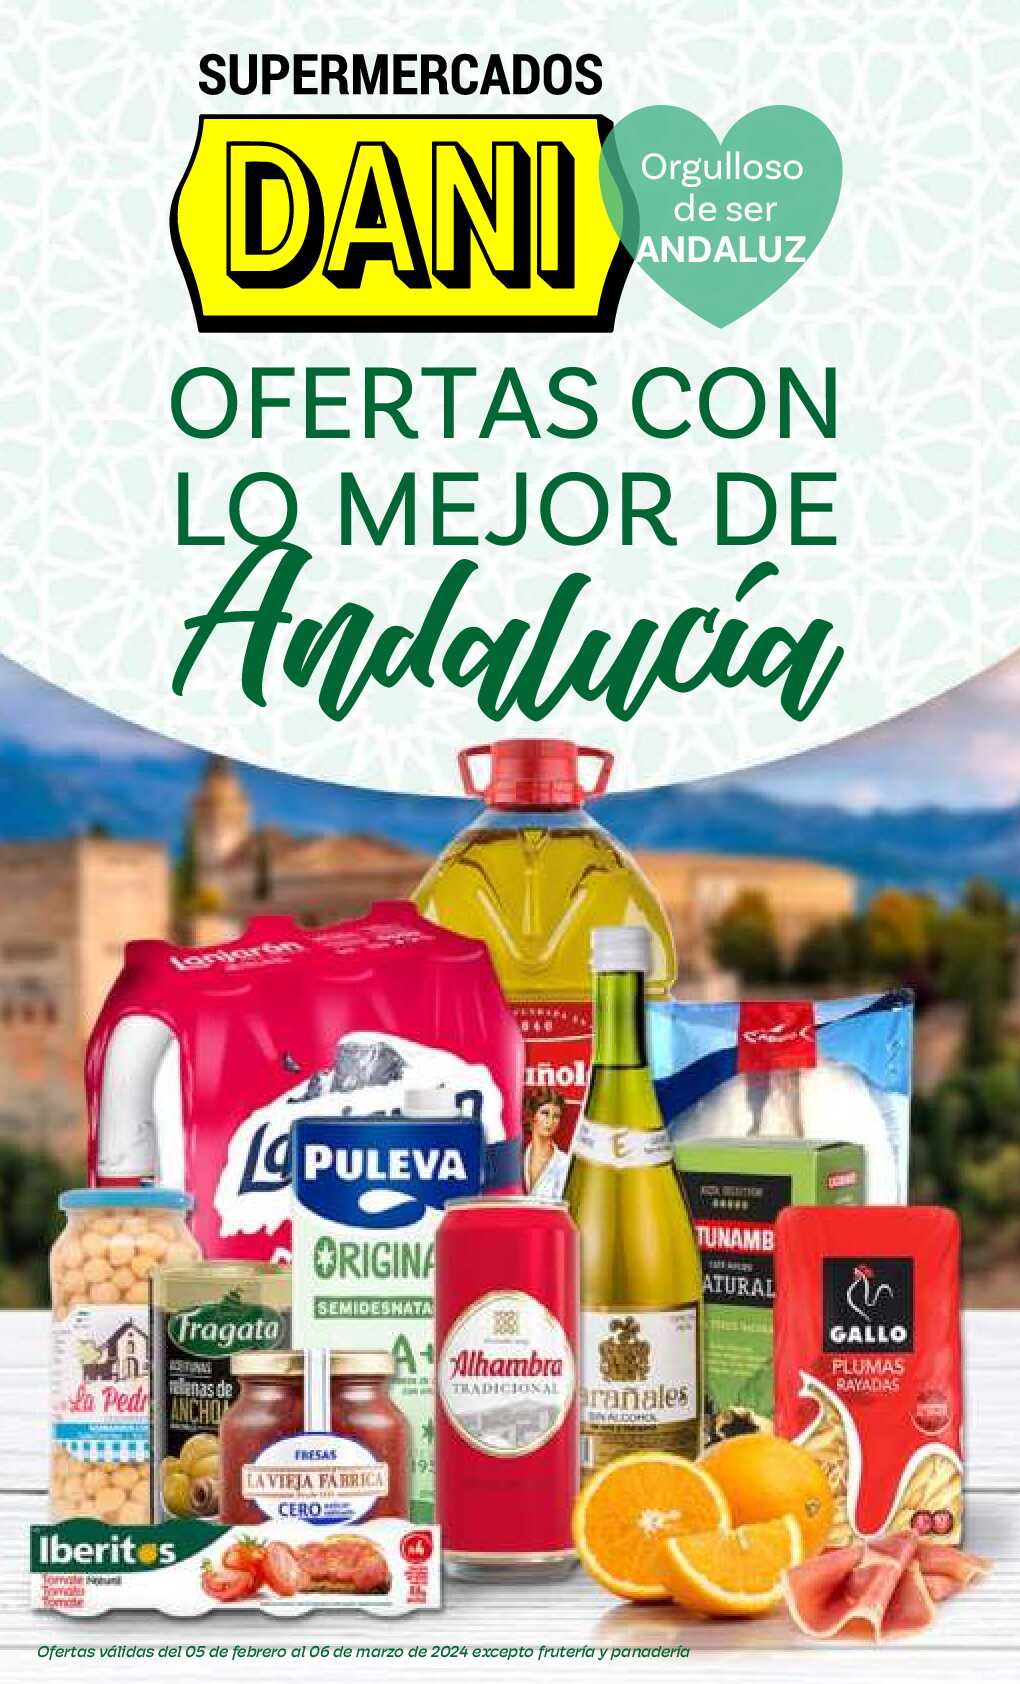 Ofertas con lo mejor de Andalucía Supermercado Dani. Página 01